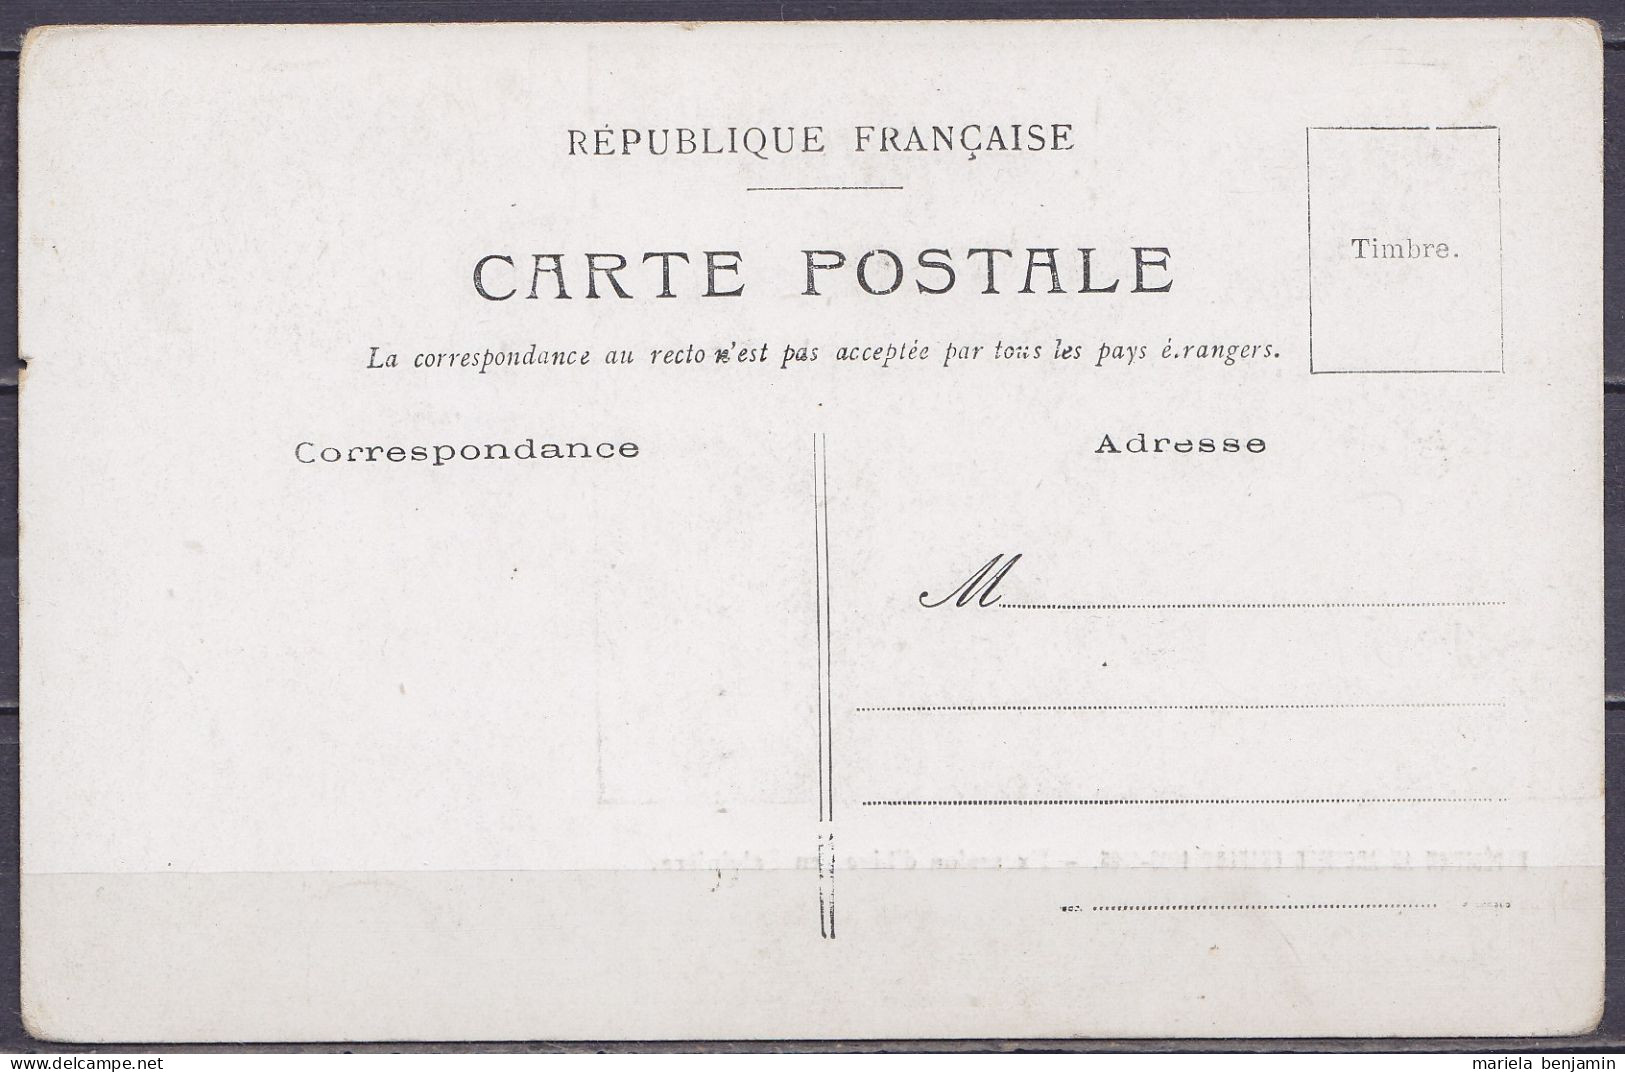 Carte Postale CP Expédition Antarctique Charcot 1903-1905 / Excursion D'hiver En Baleinière - Non Circulée // Tad605 - Lettres & Documents